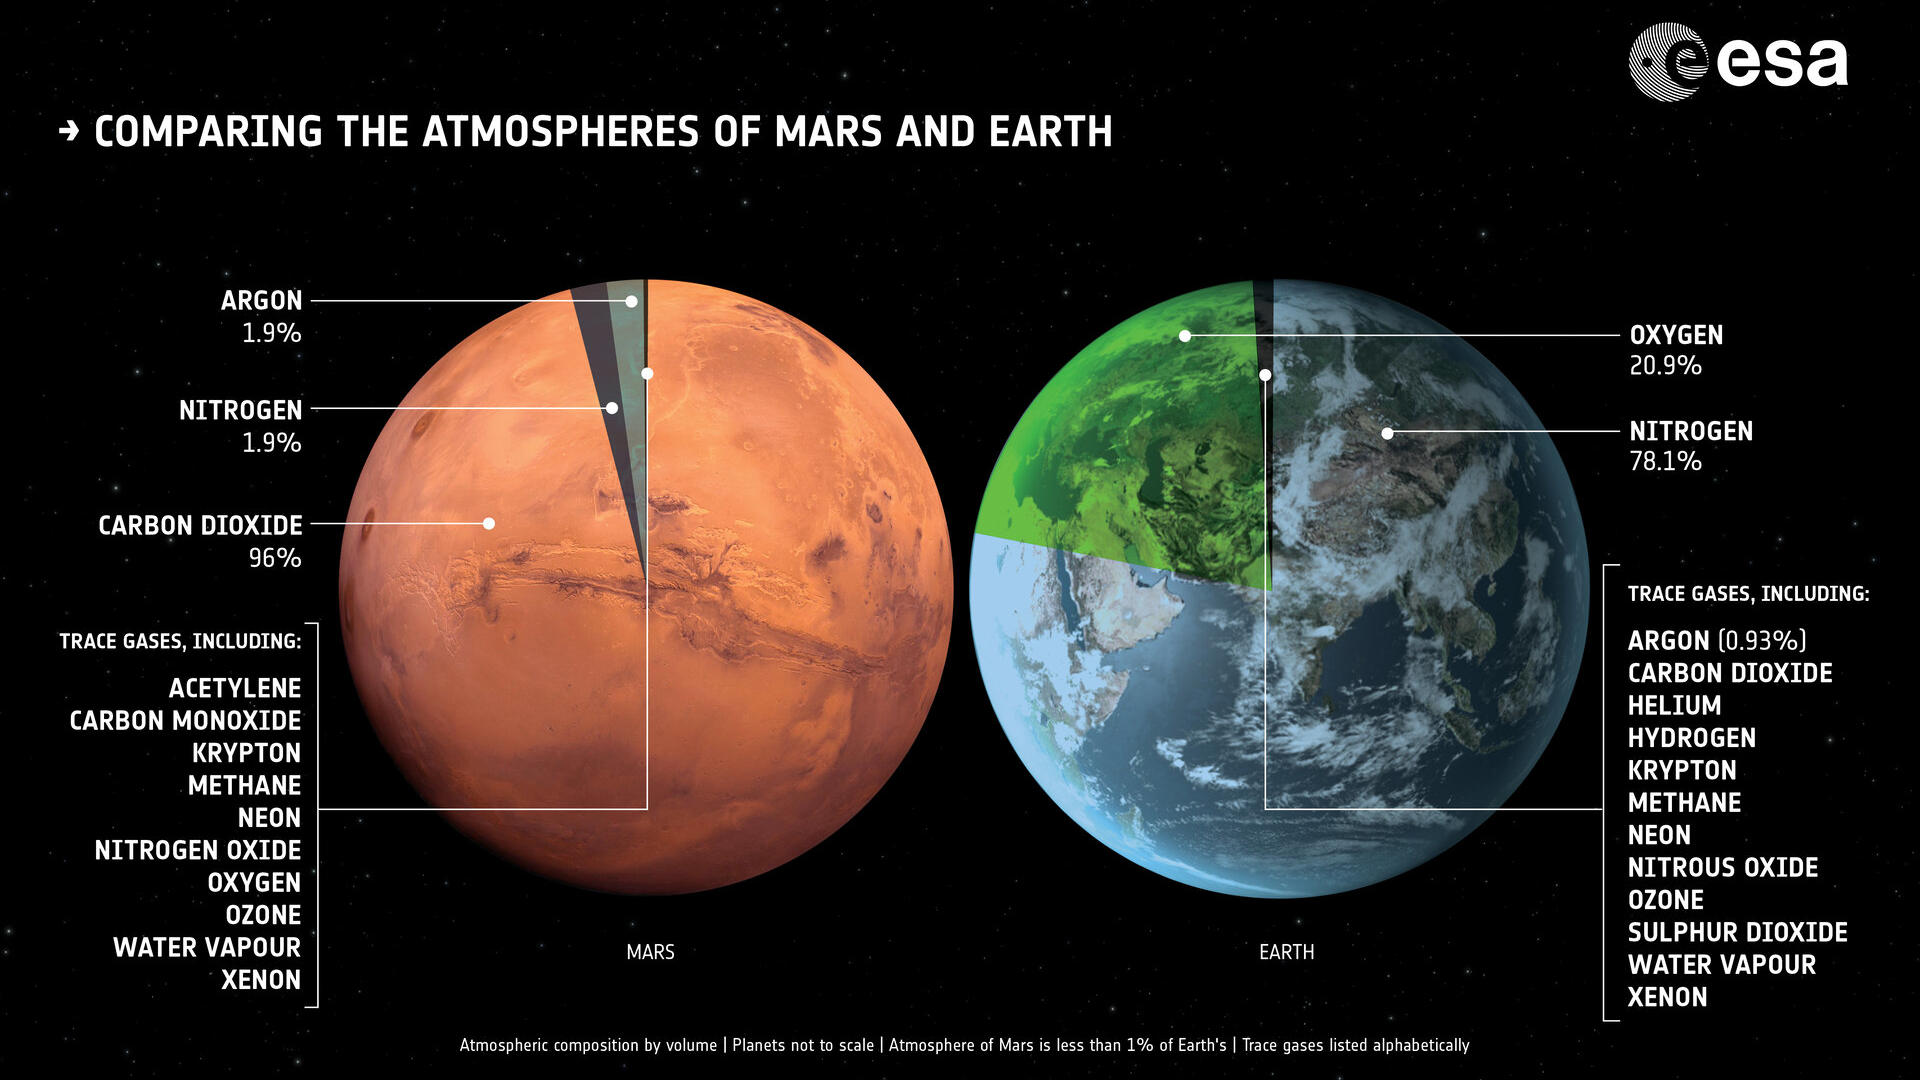 Während es auf der Erde viel Stickstoff und Sauerstoff gibt, besteht die "Marsluft" vor allem aus Kohlenstoffdioxid.